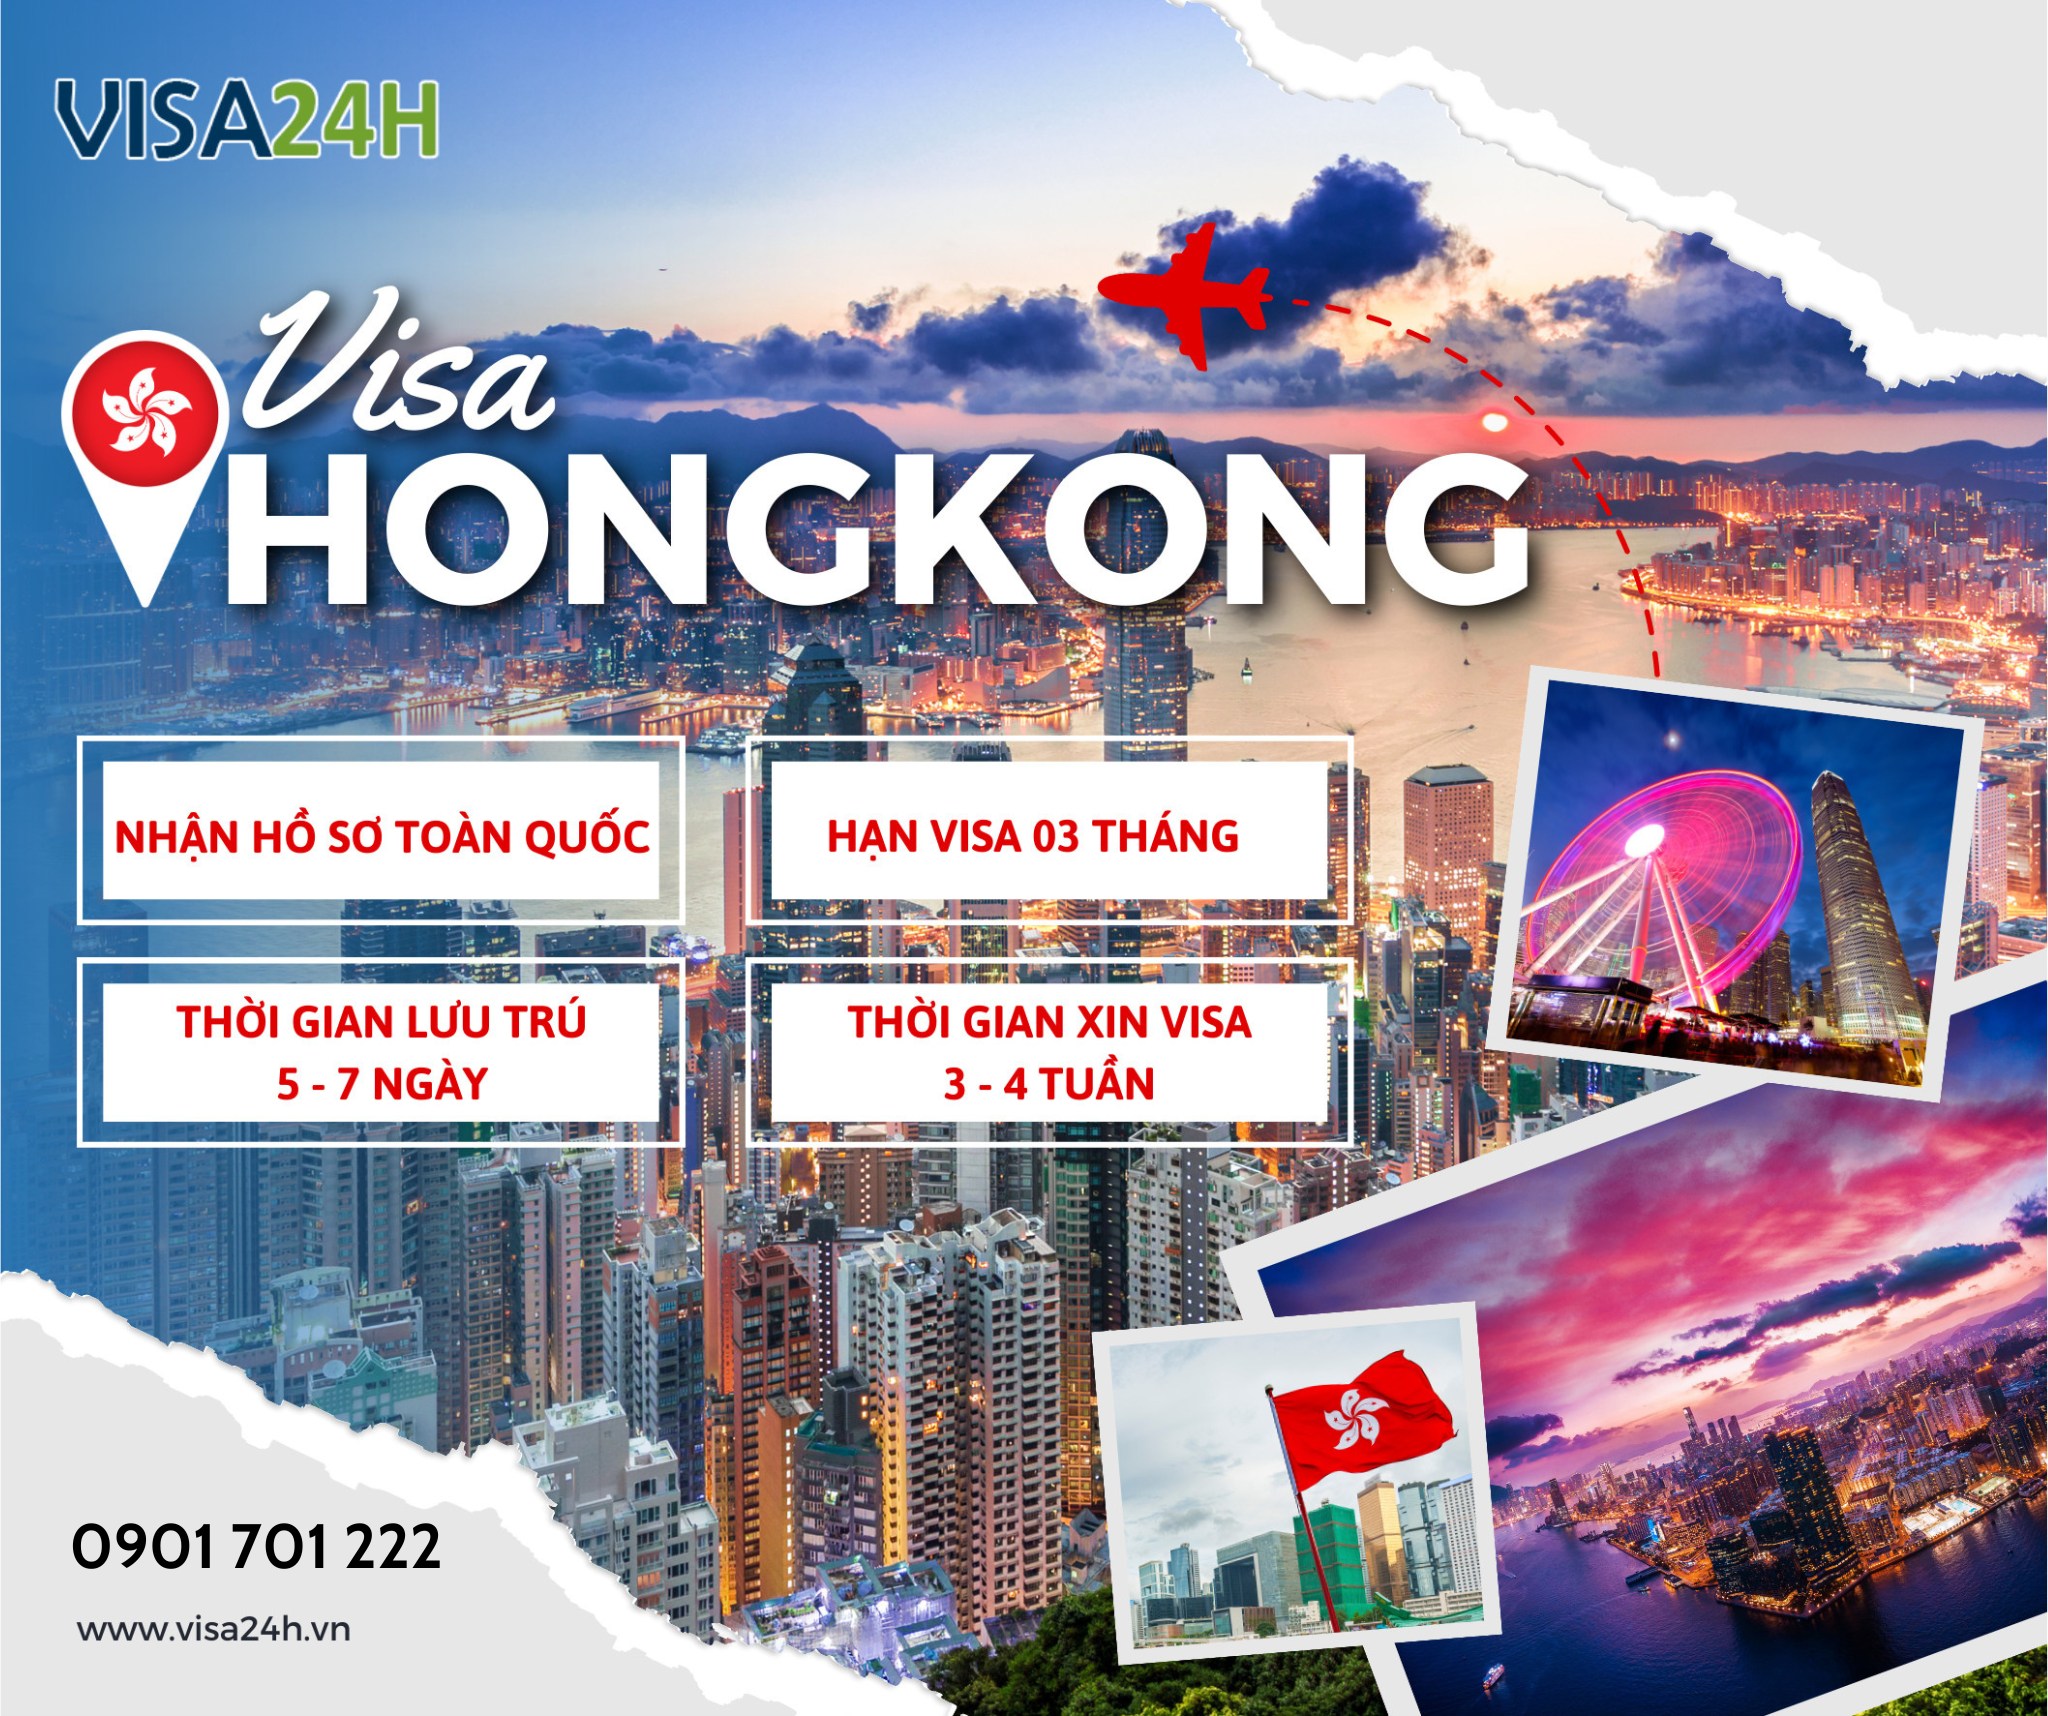 Dịch vụ visa Hongkong trọn gói, bao đậu